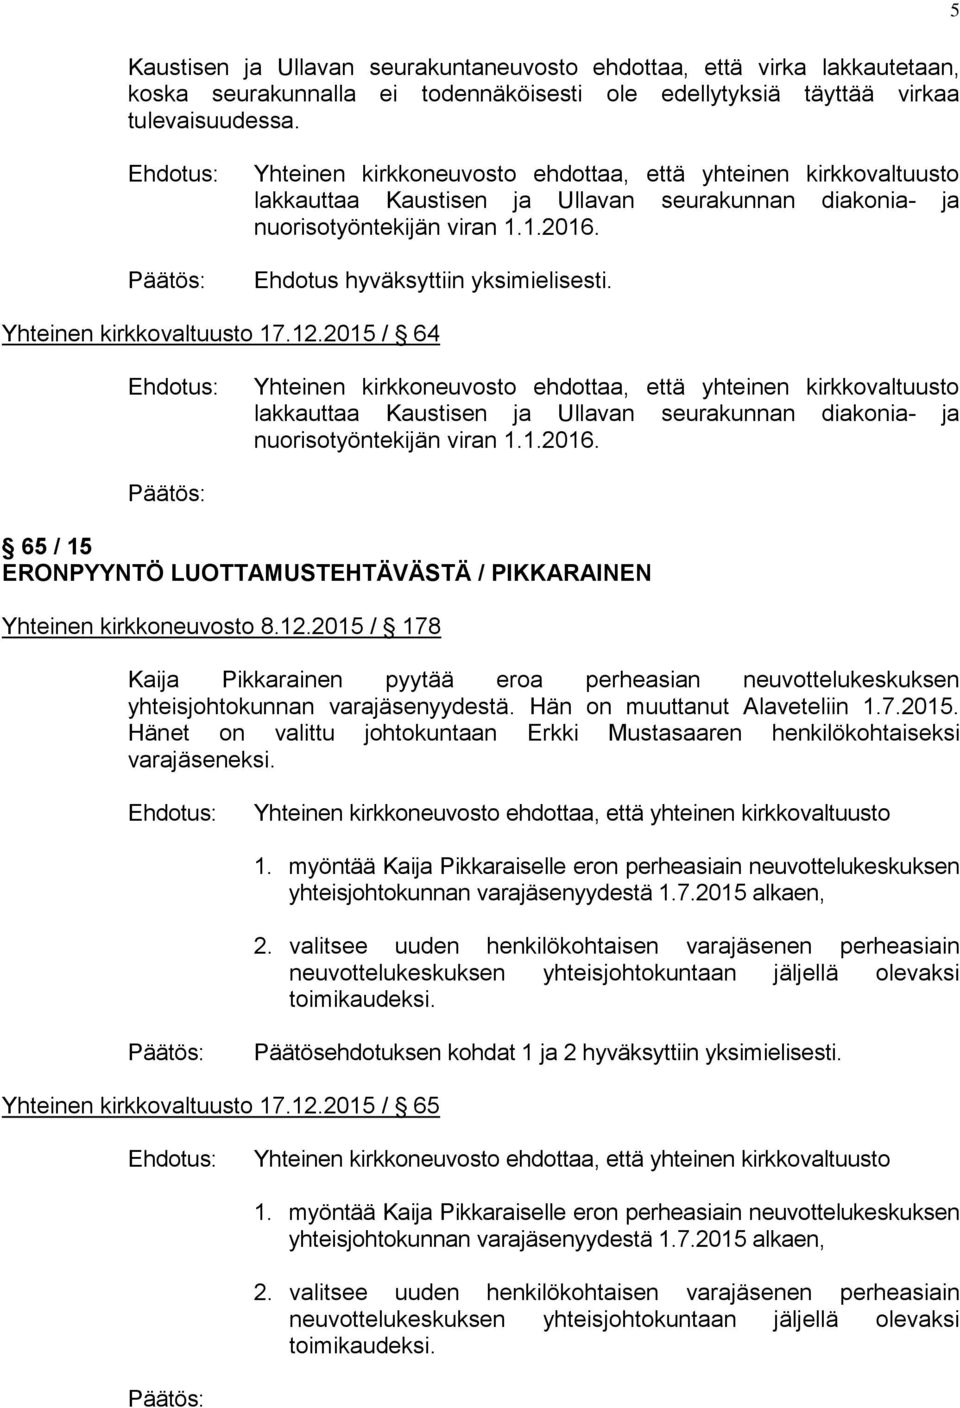 2015 / 64 lakkauttaa Kaustisen ja Ullavan seurakunnan diakonia- ja nuorisotyöntekijän viran 1.1.2016. 65 / 15 ERONPYYNTÖ LUOTTAMUSTEHTÄVÄSTÄ / PIKKARAINEN Yhteinen kirkkoneuvosto 8.12.